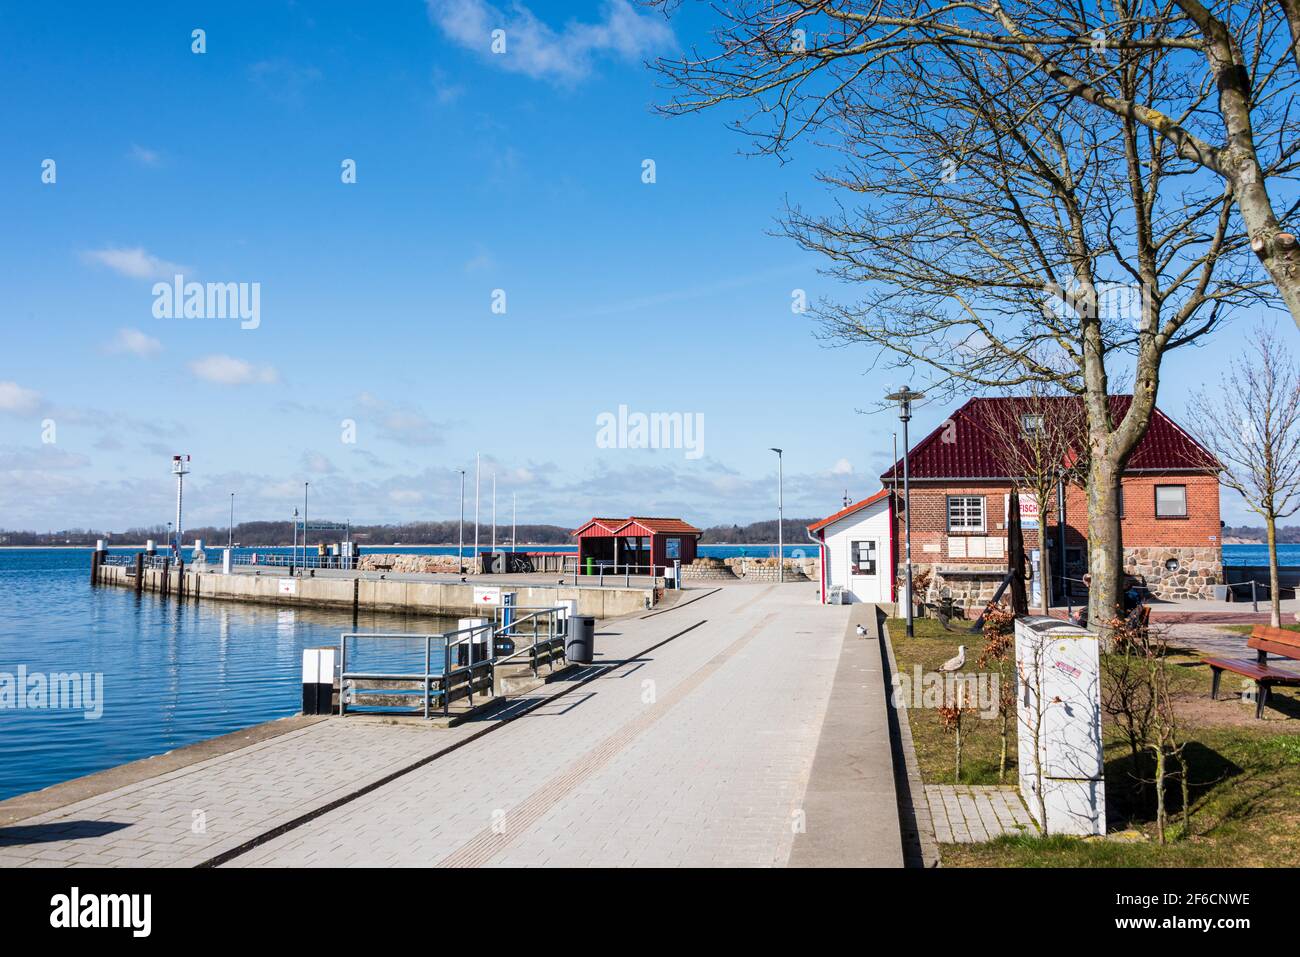 Rund um das Hafenbecken des Ostseebades Laboe erstrecken sich die touristischen Attraktionen des Ortes Stock Photo